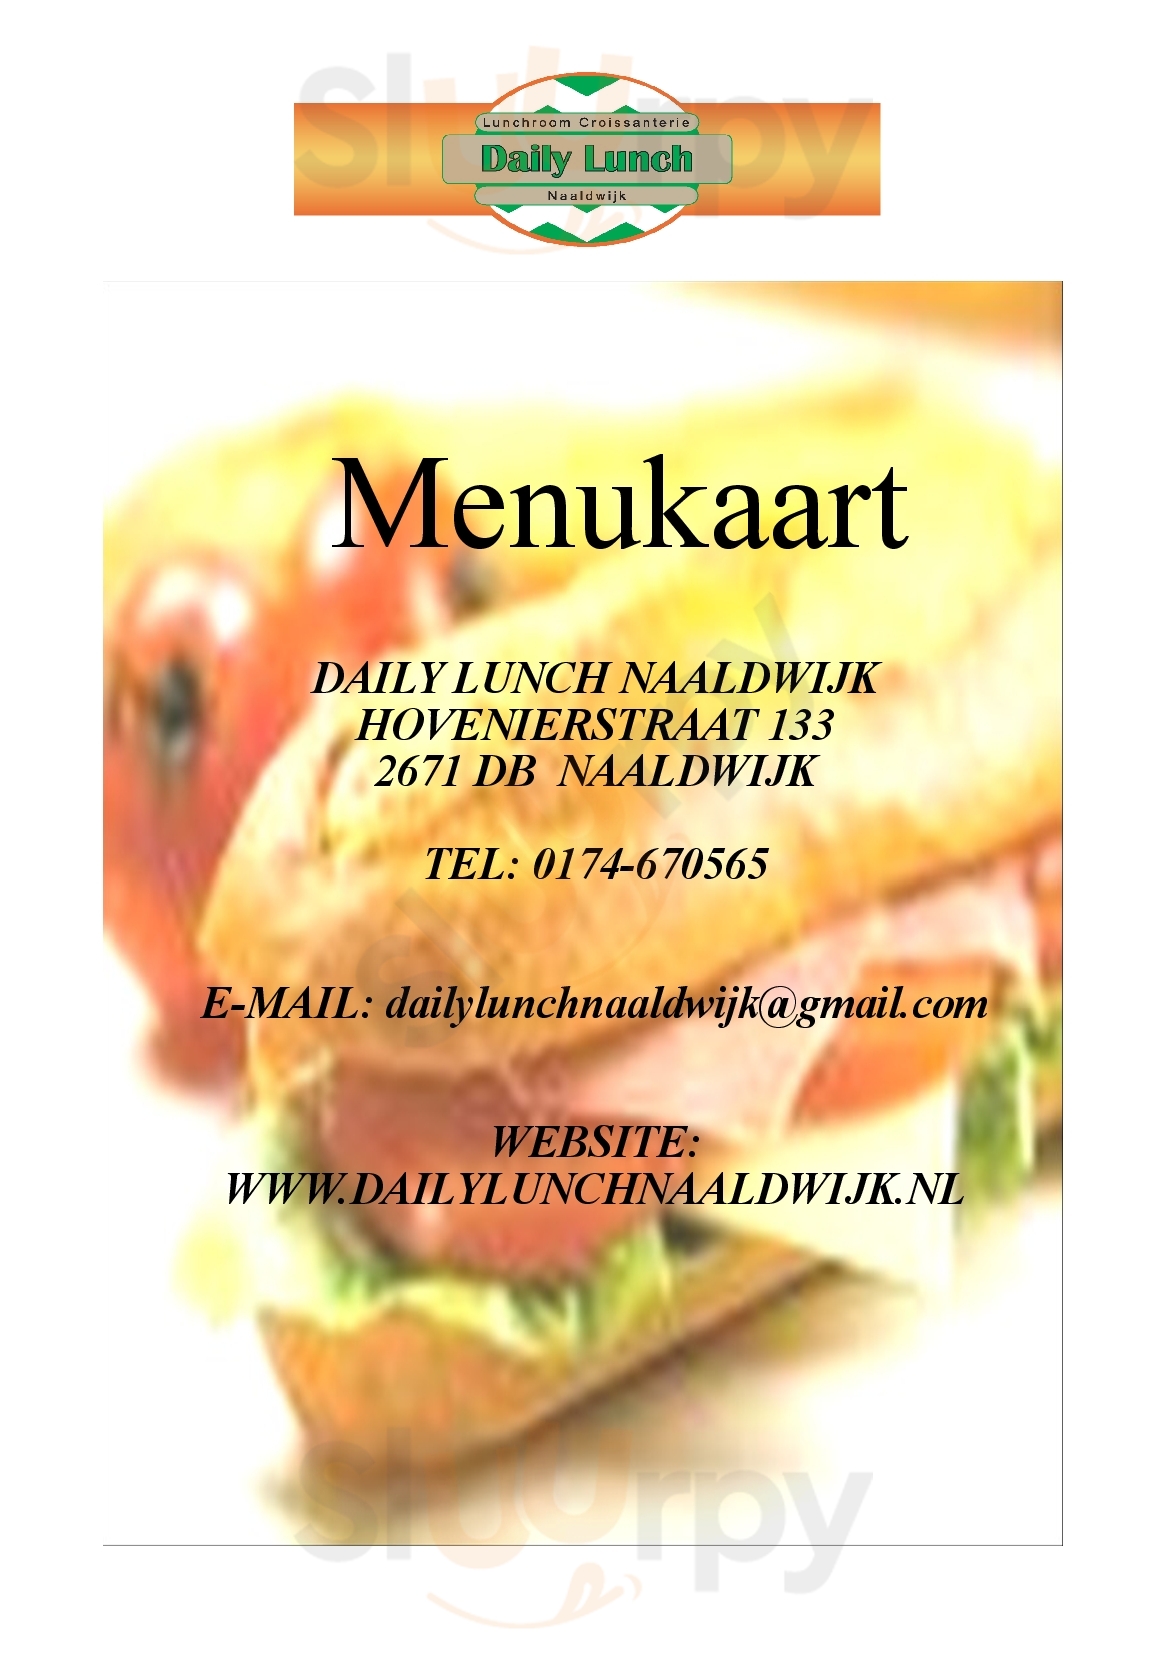 Daily Lunch Naaldwijk Naaldwijk Menu - 1